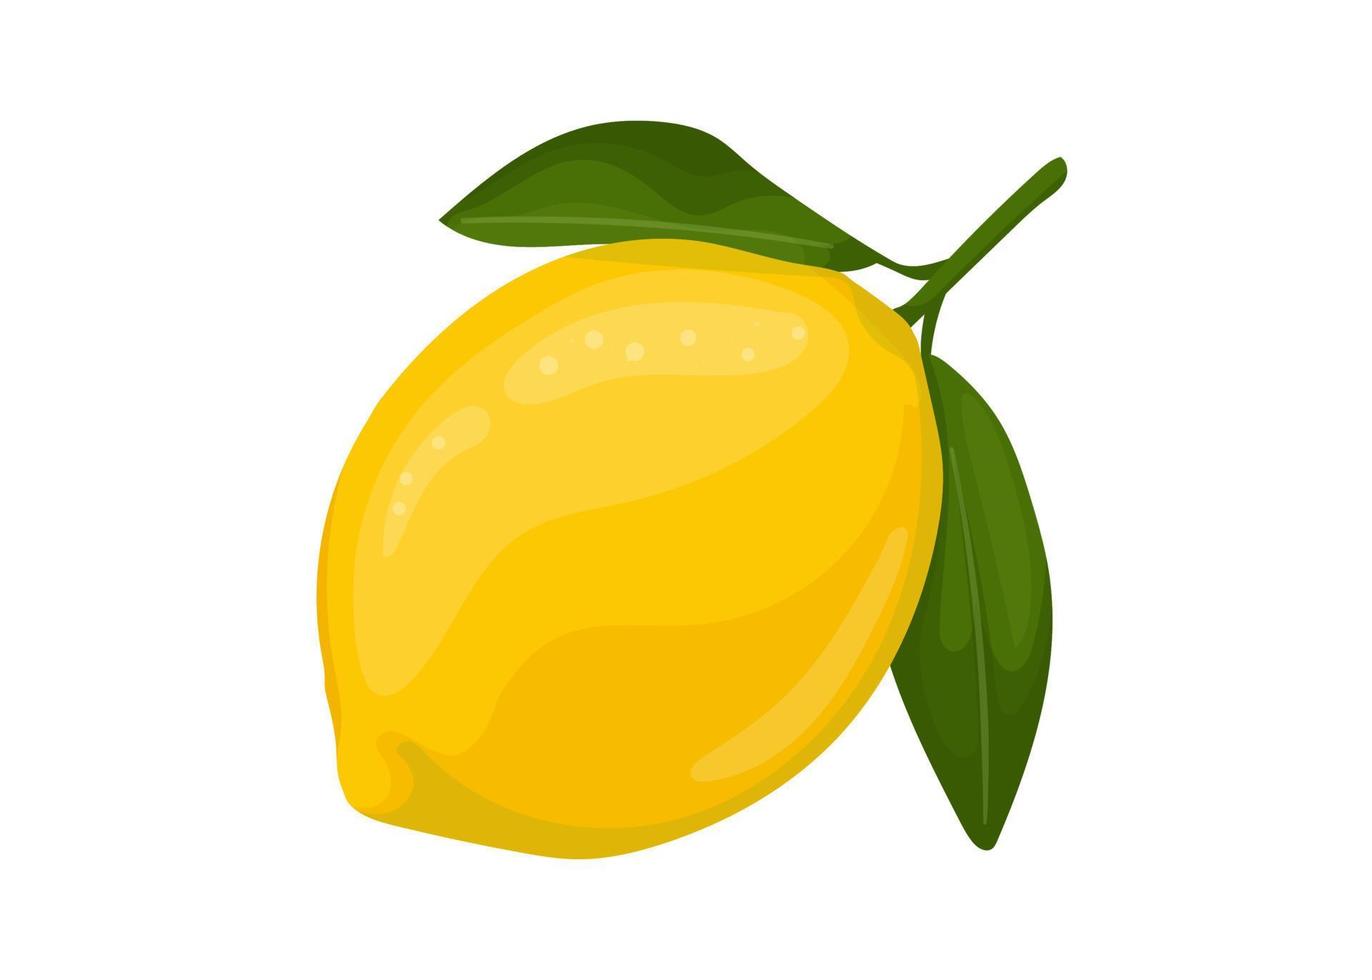 lemon isolated on white background, lemon vector illustration